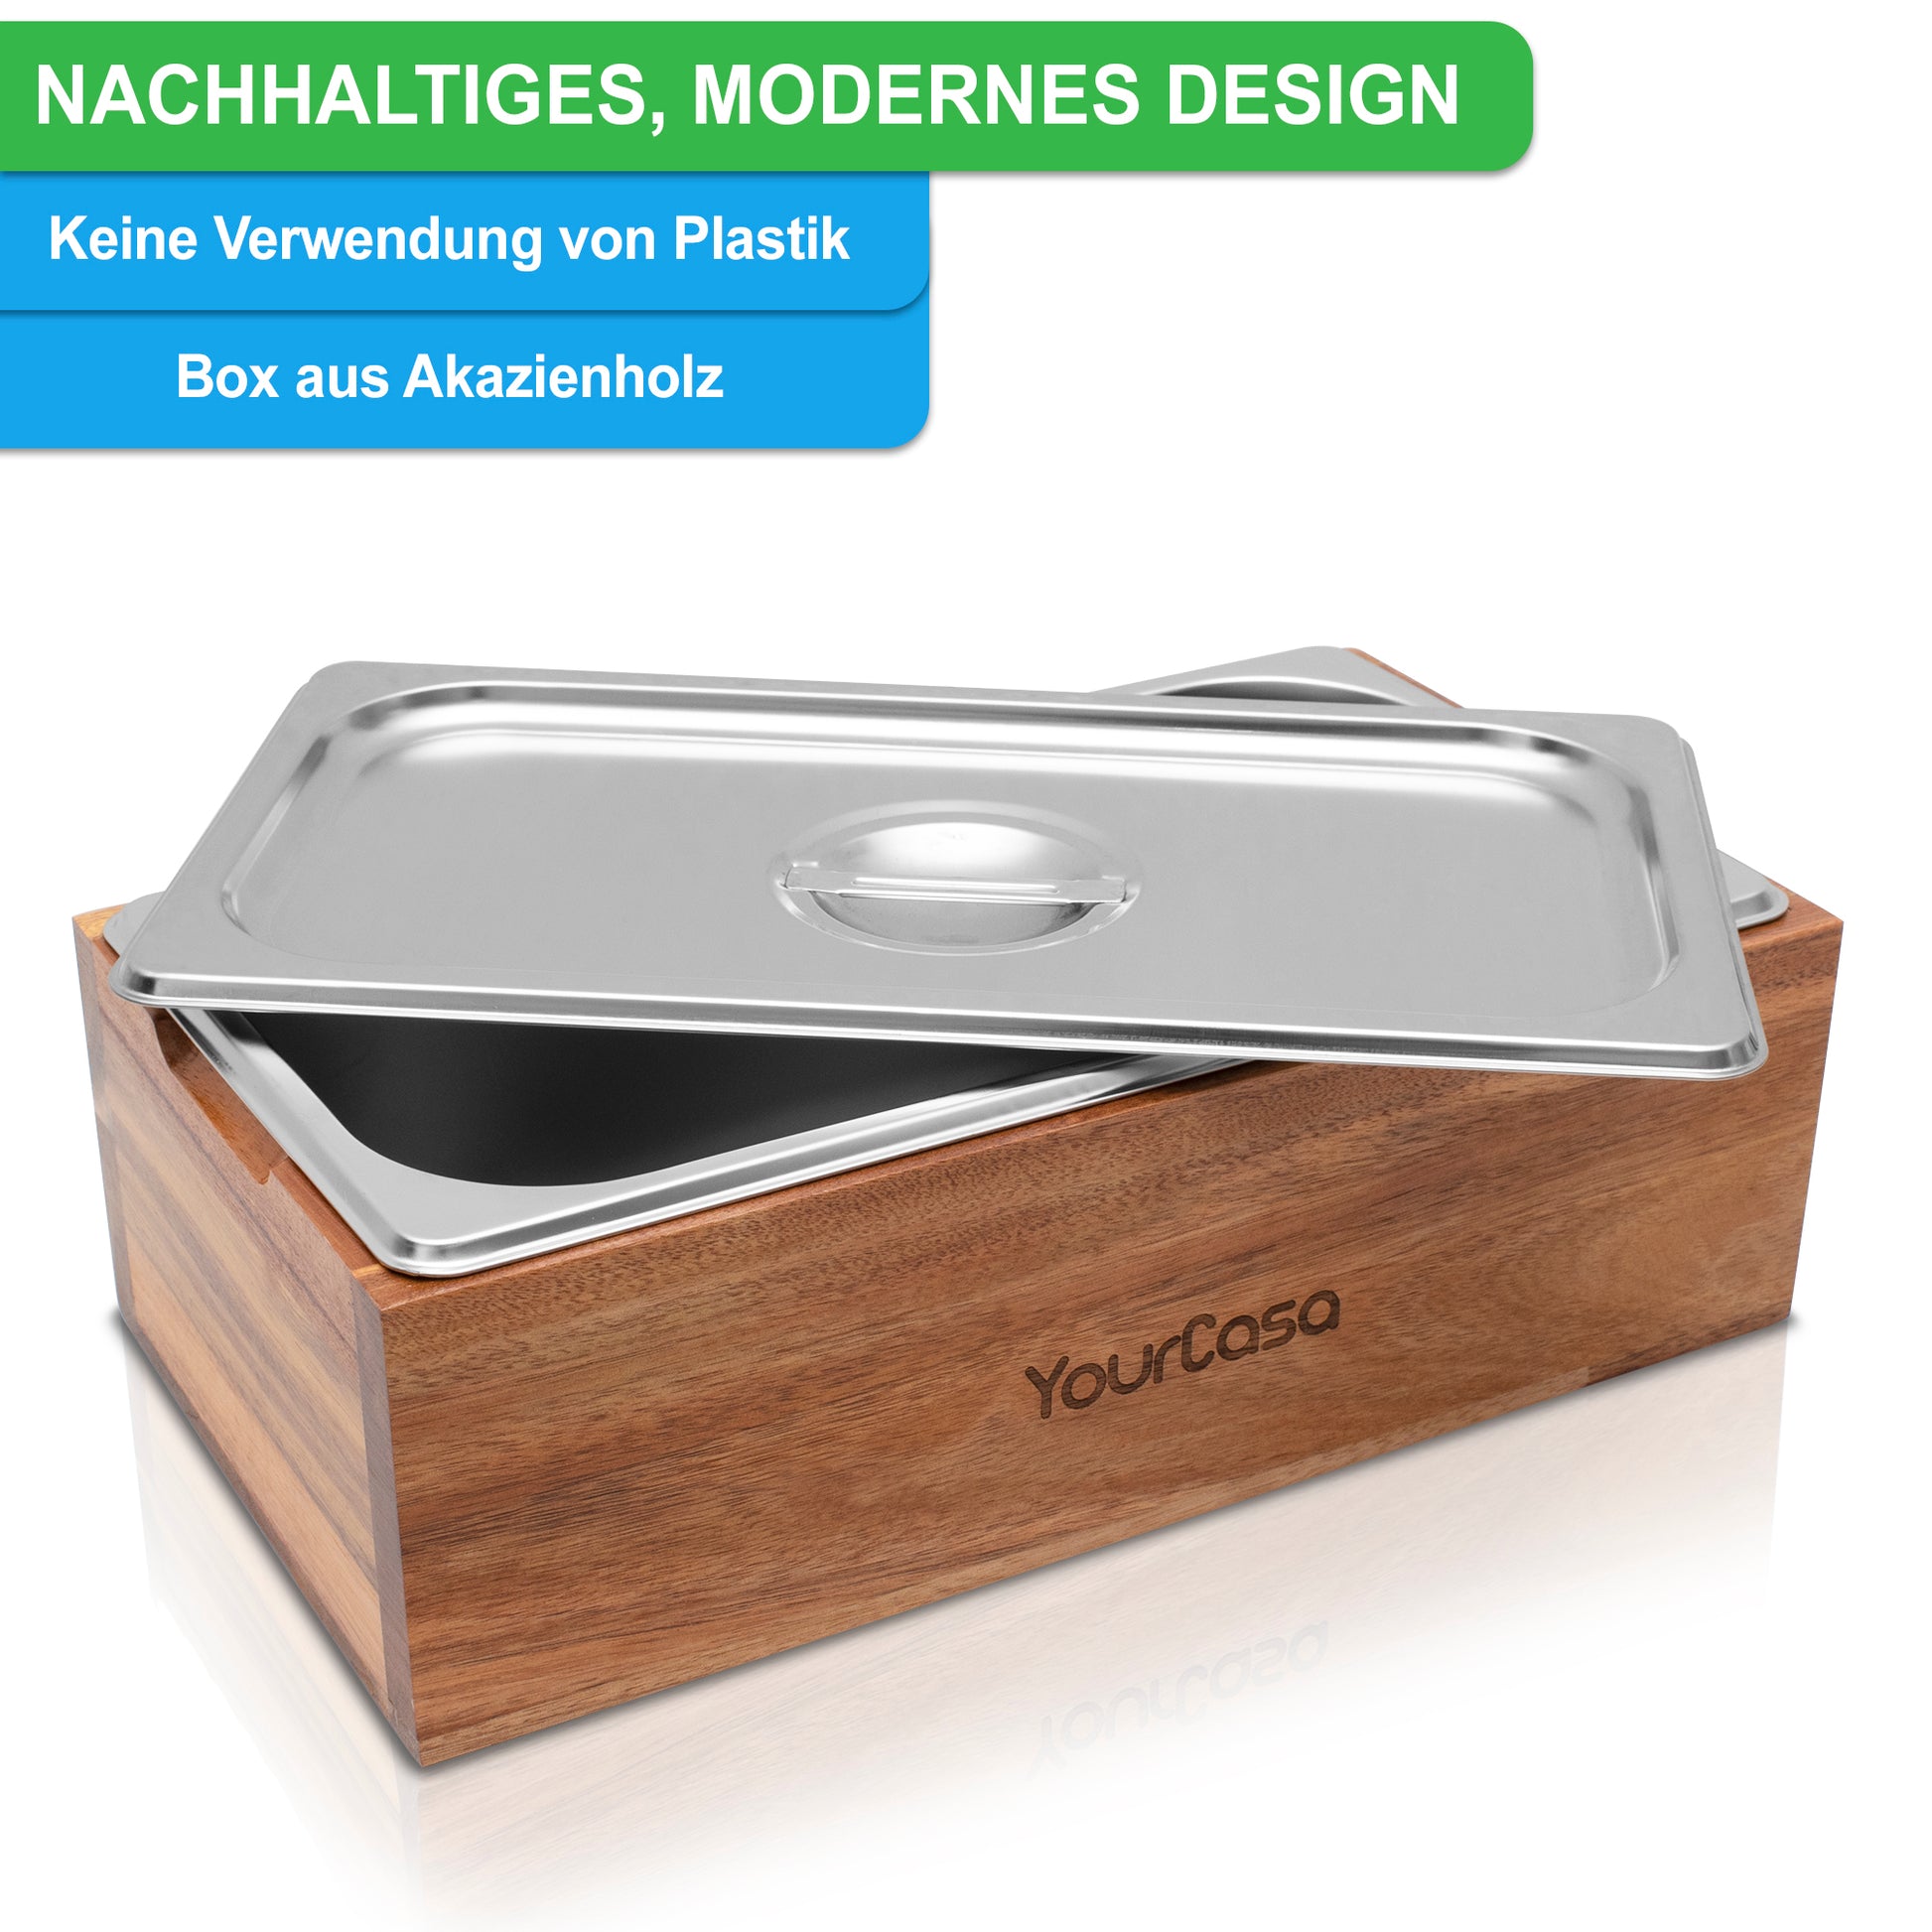 Modern gestalteter Komposter mit spülmaschinentauglicher Edelstahl-Abdeckung und Akazienholz-Unterbau, Aufschrift „yourcasa-de“.